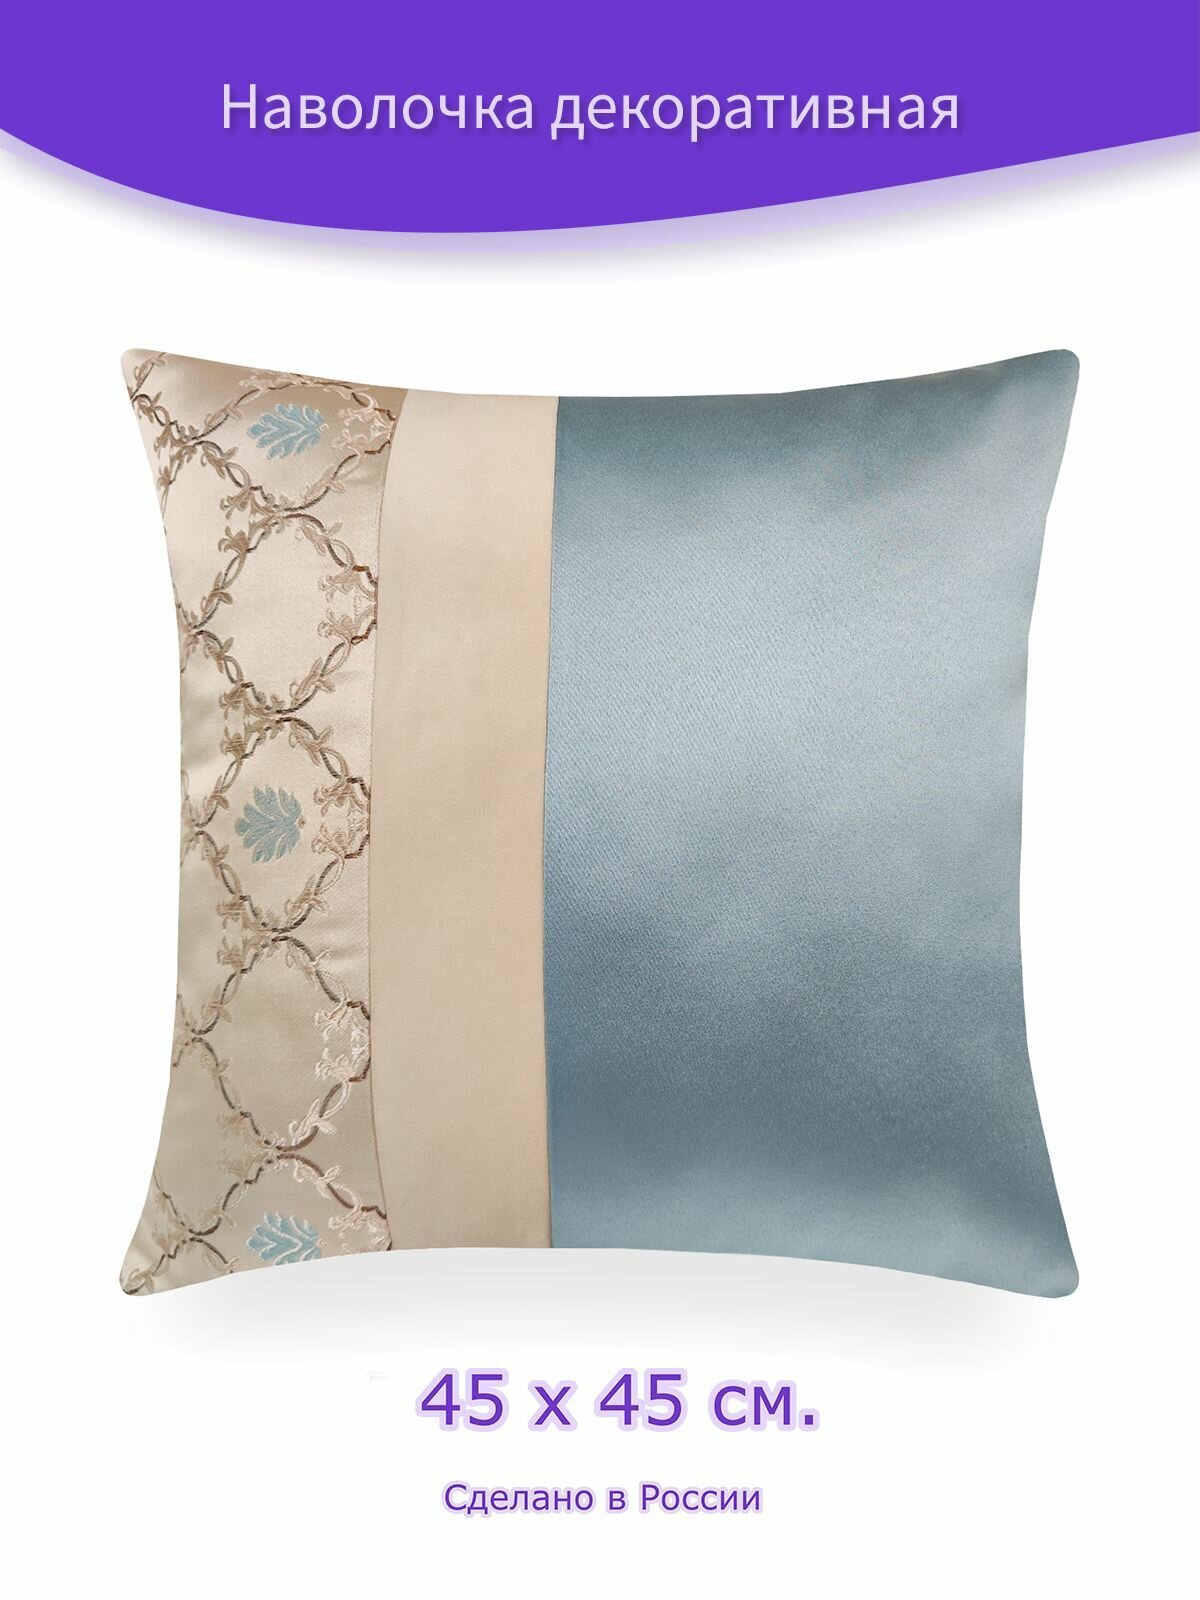 Наволочка - чехол для декоративной подушки на молнии "Nika" Ш 45 х В 45 см, голубой, бежевый